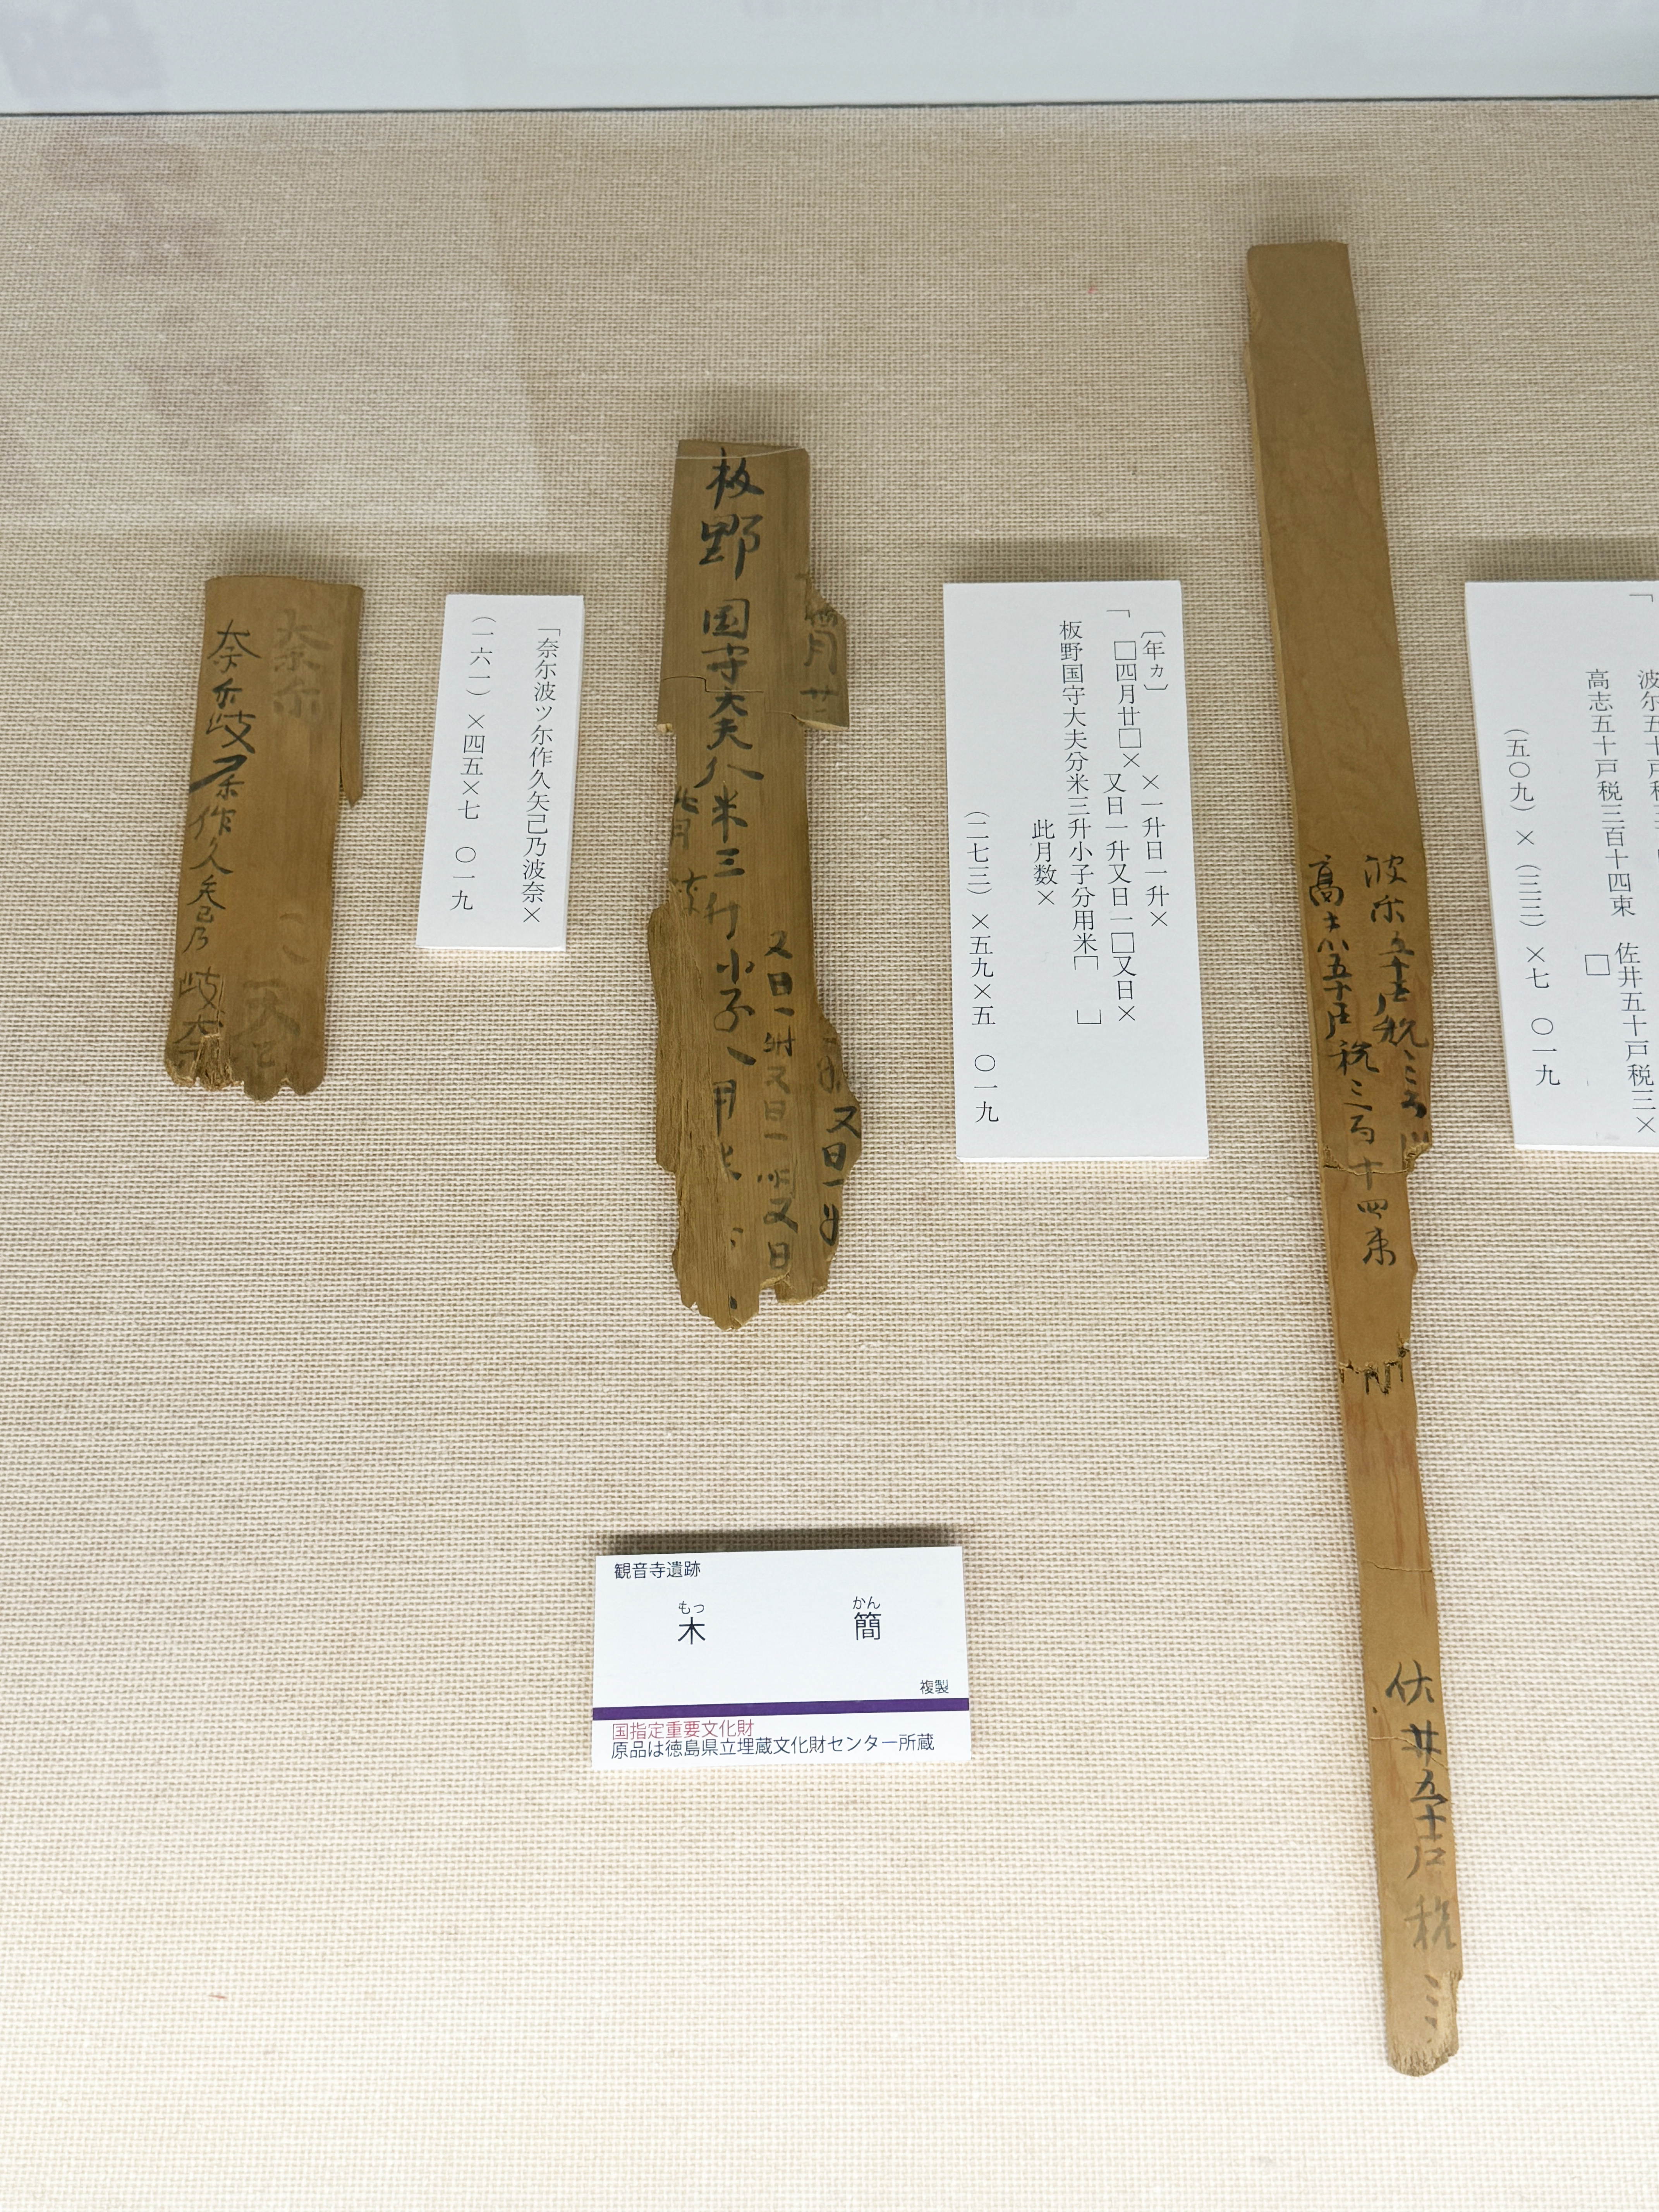 考古資料館で展示している観音寺木簡(複製品)